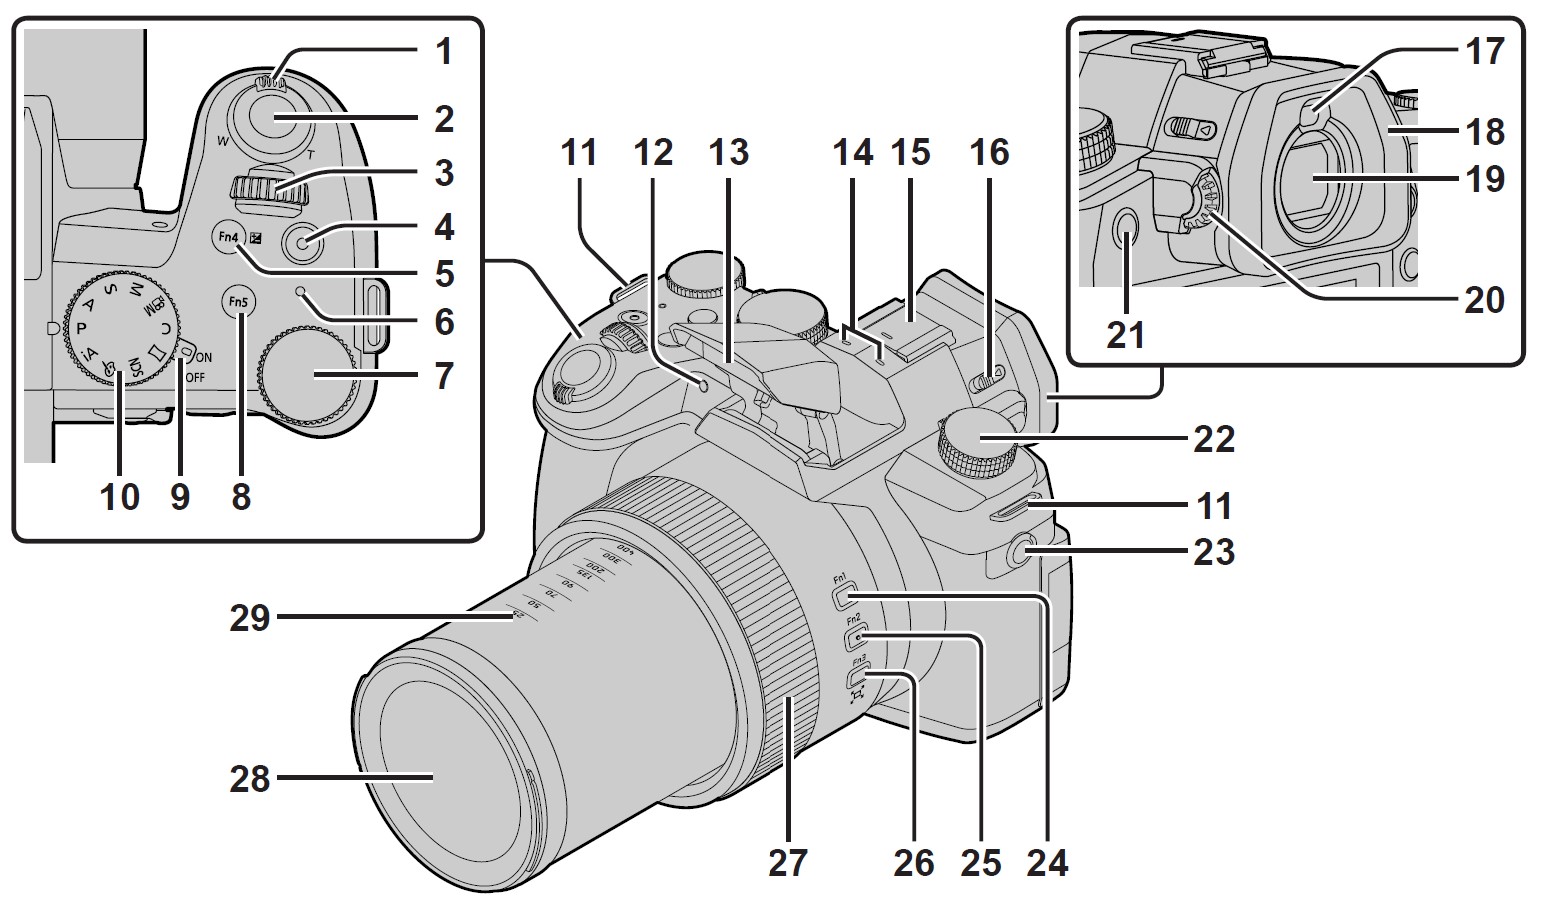 Panasonic-LUMIX-FZ1000-II-Digital-Camera-Owner-Manual-4